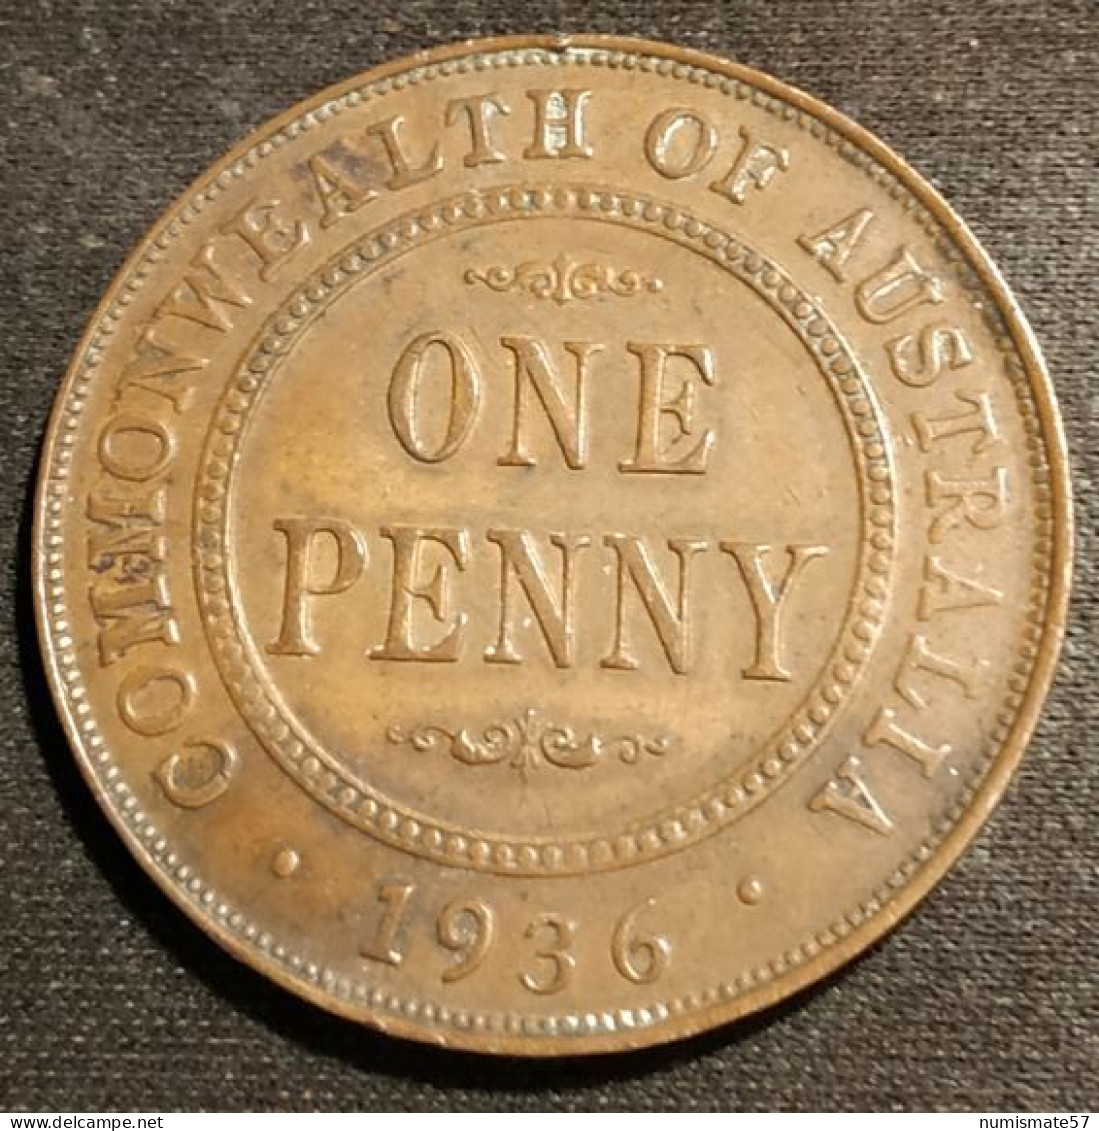 AUSTRALIE - AUSTRALIA - 1 - ONE PENNY 1936 - George V - KM 23 - Penny